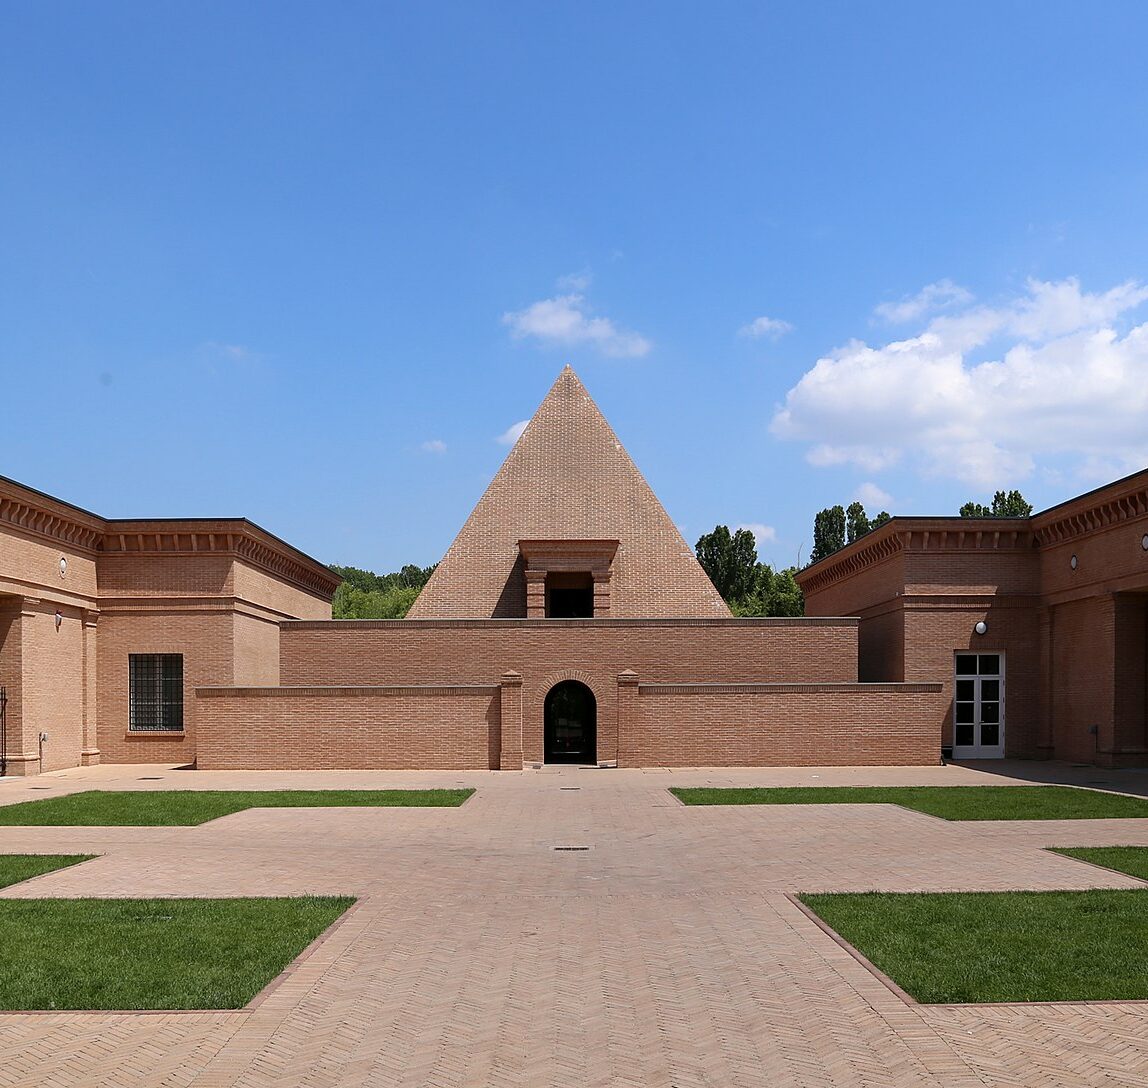 Labirinto della Masone, 7 musei da vedere a Parma